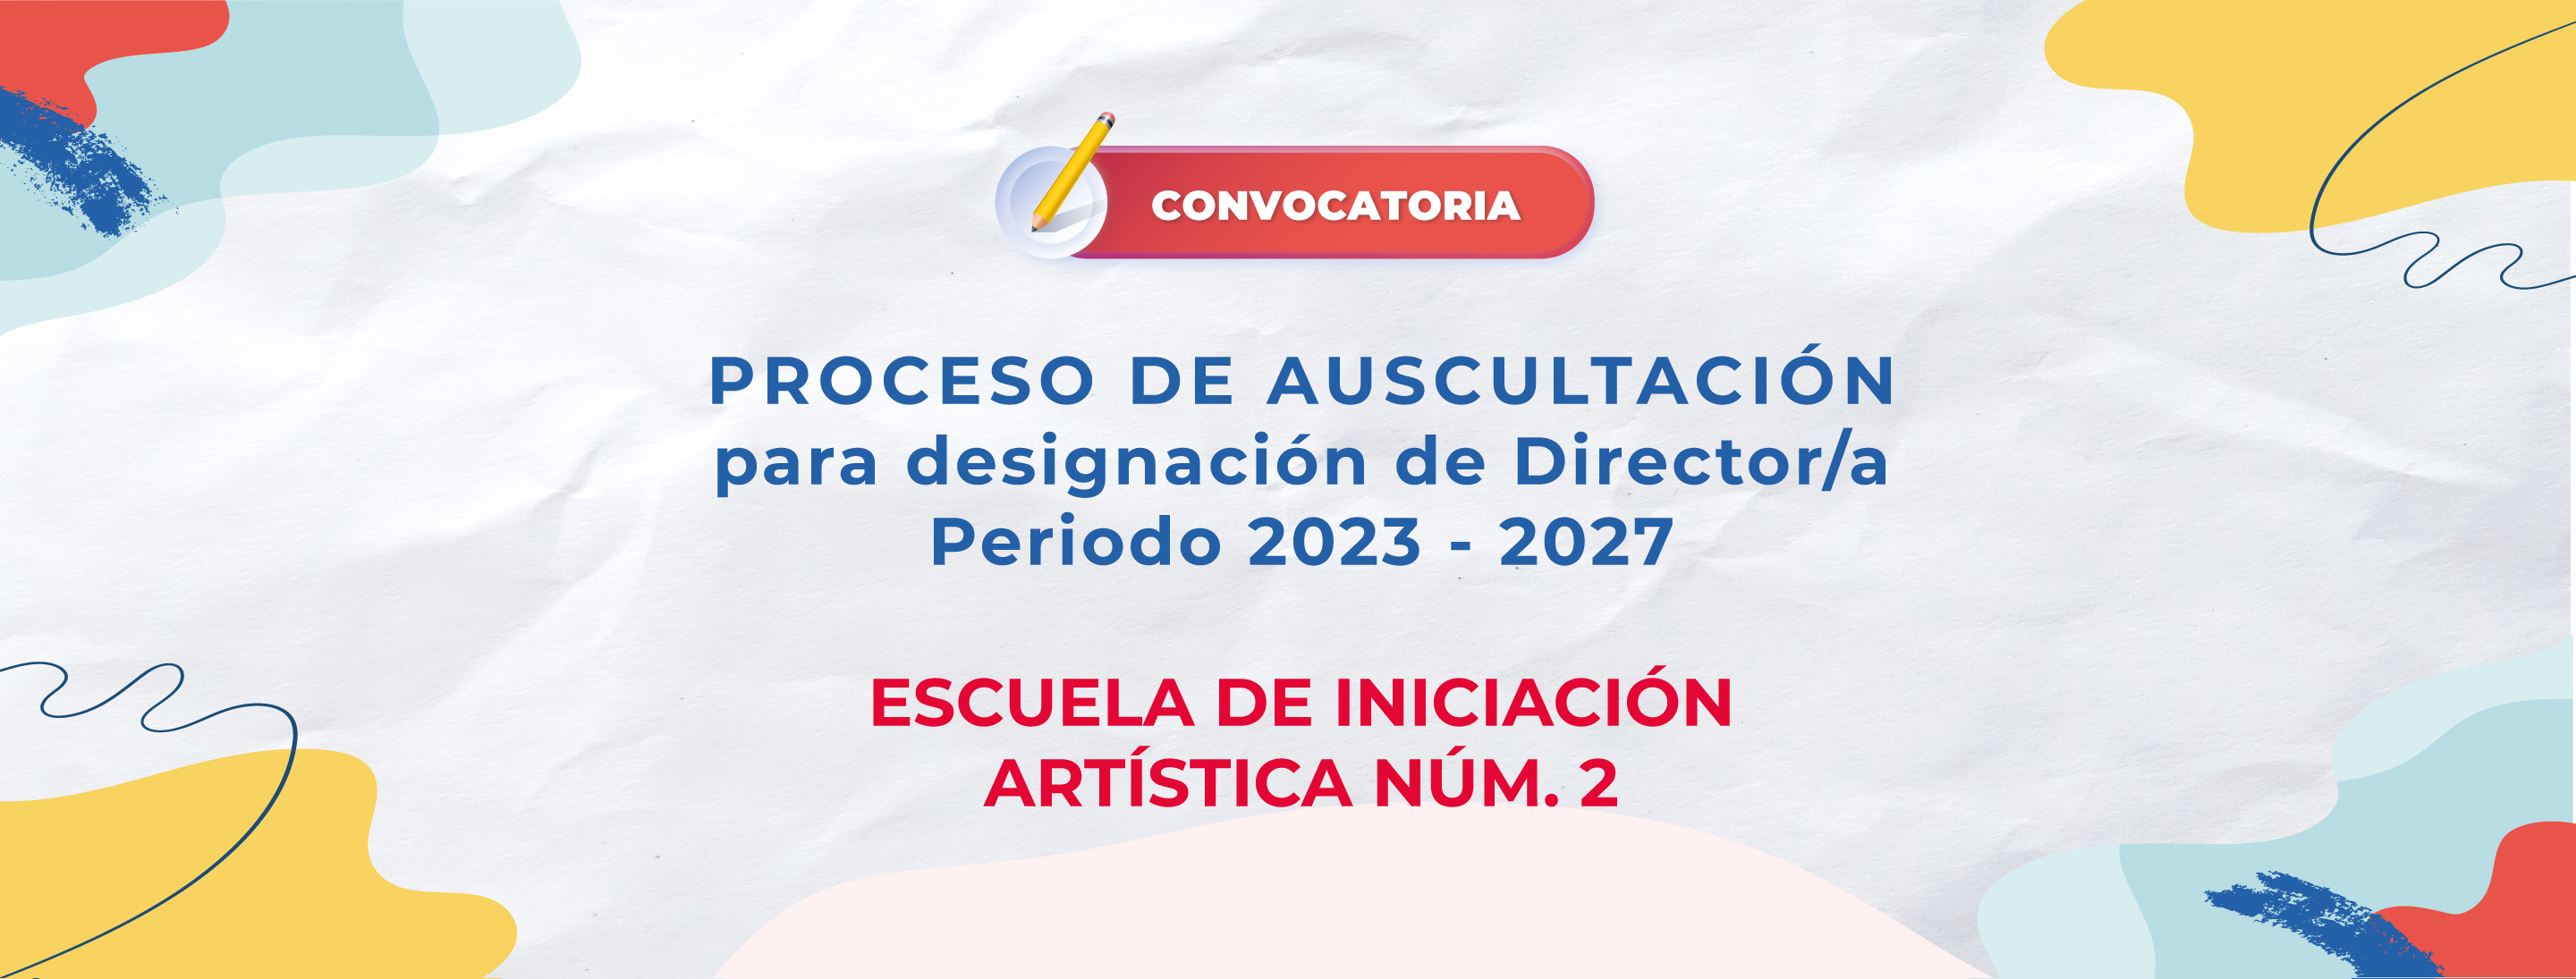 Proceso de Auscultación para designación de Director/a de la Escuela de Iniciación Artística Núm. 2